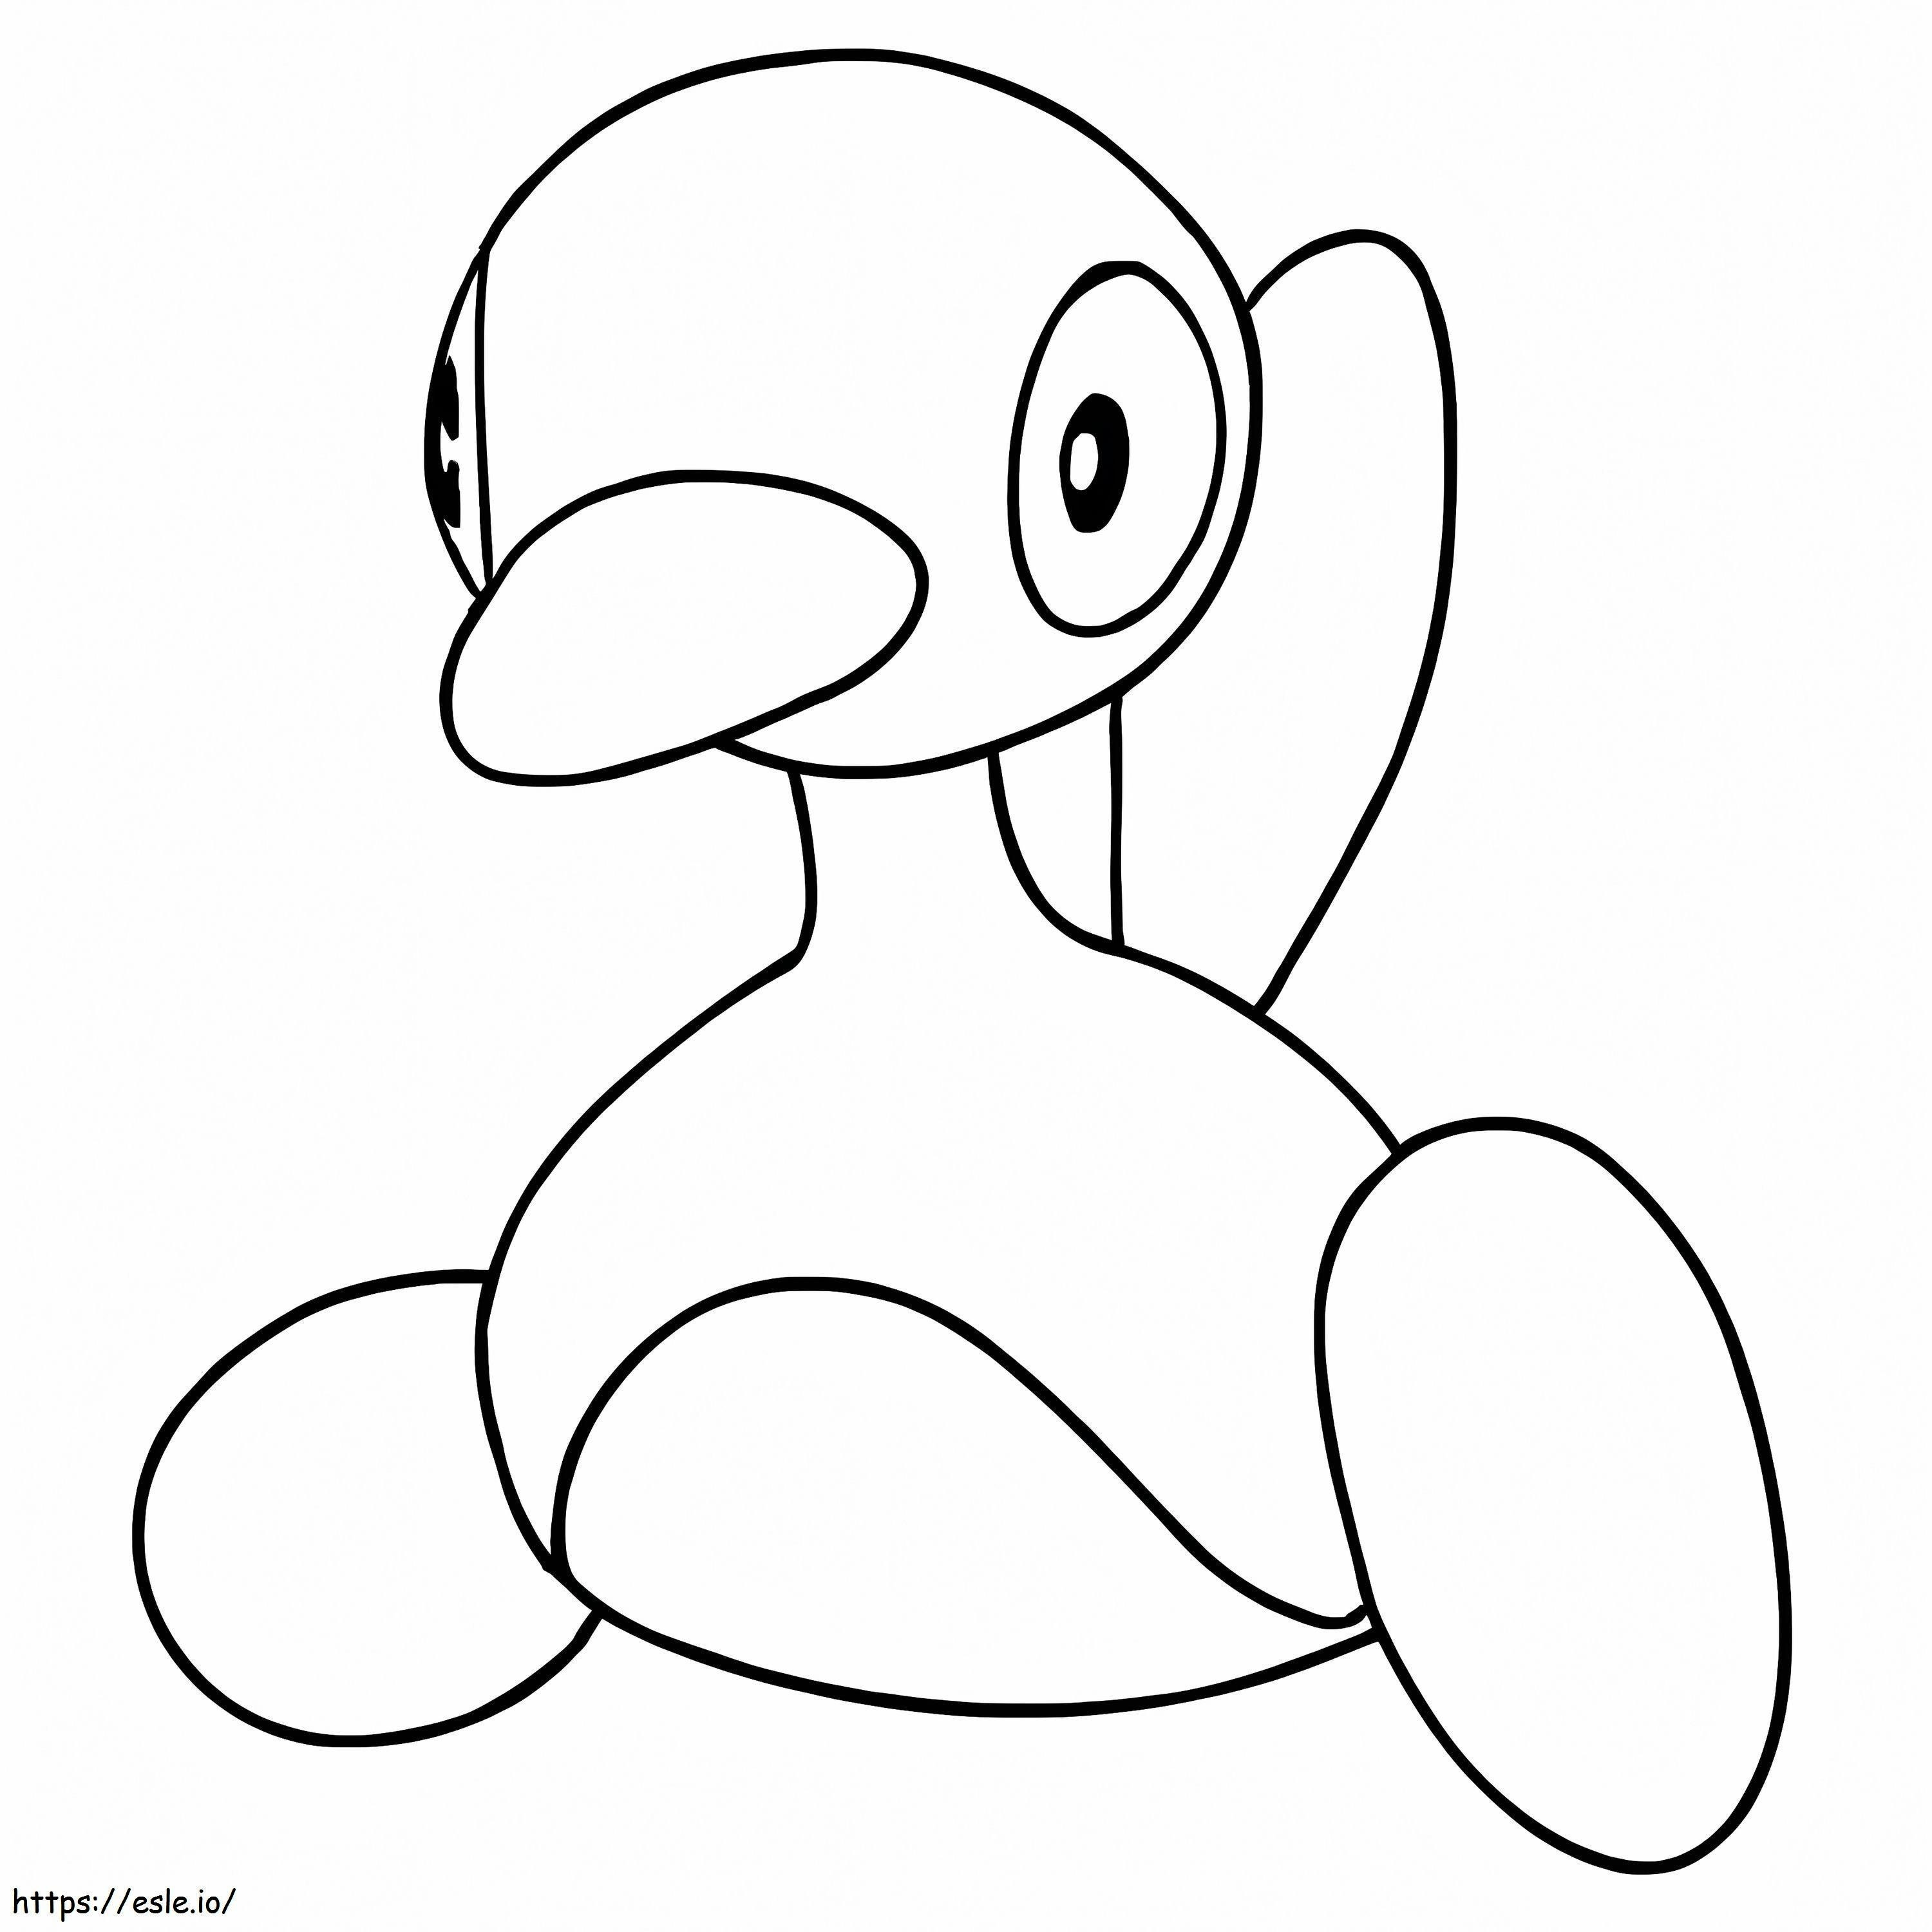 Coloriage Porygon2 Un Pokémon à imprimer dessin